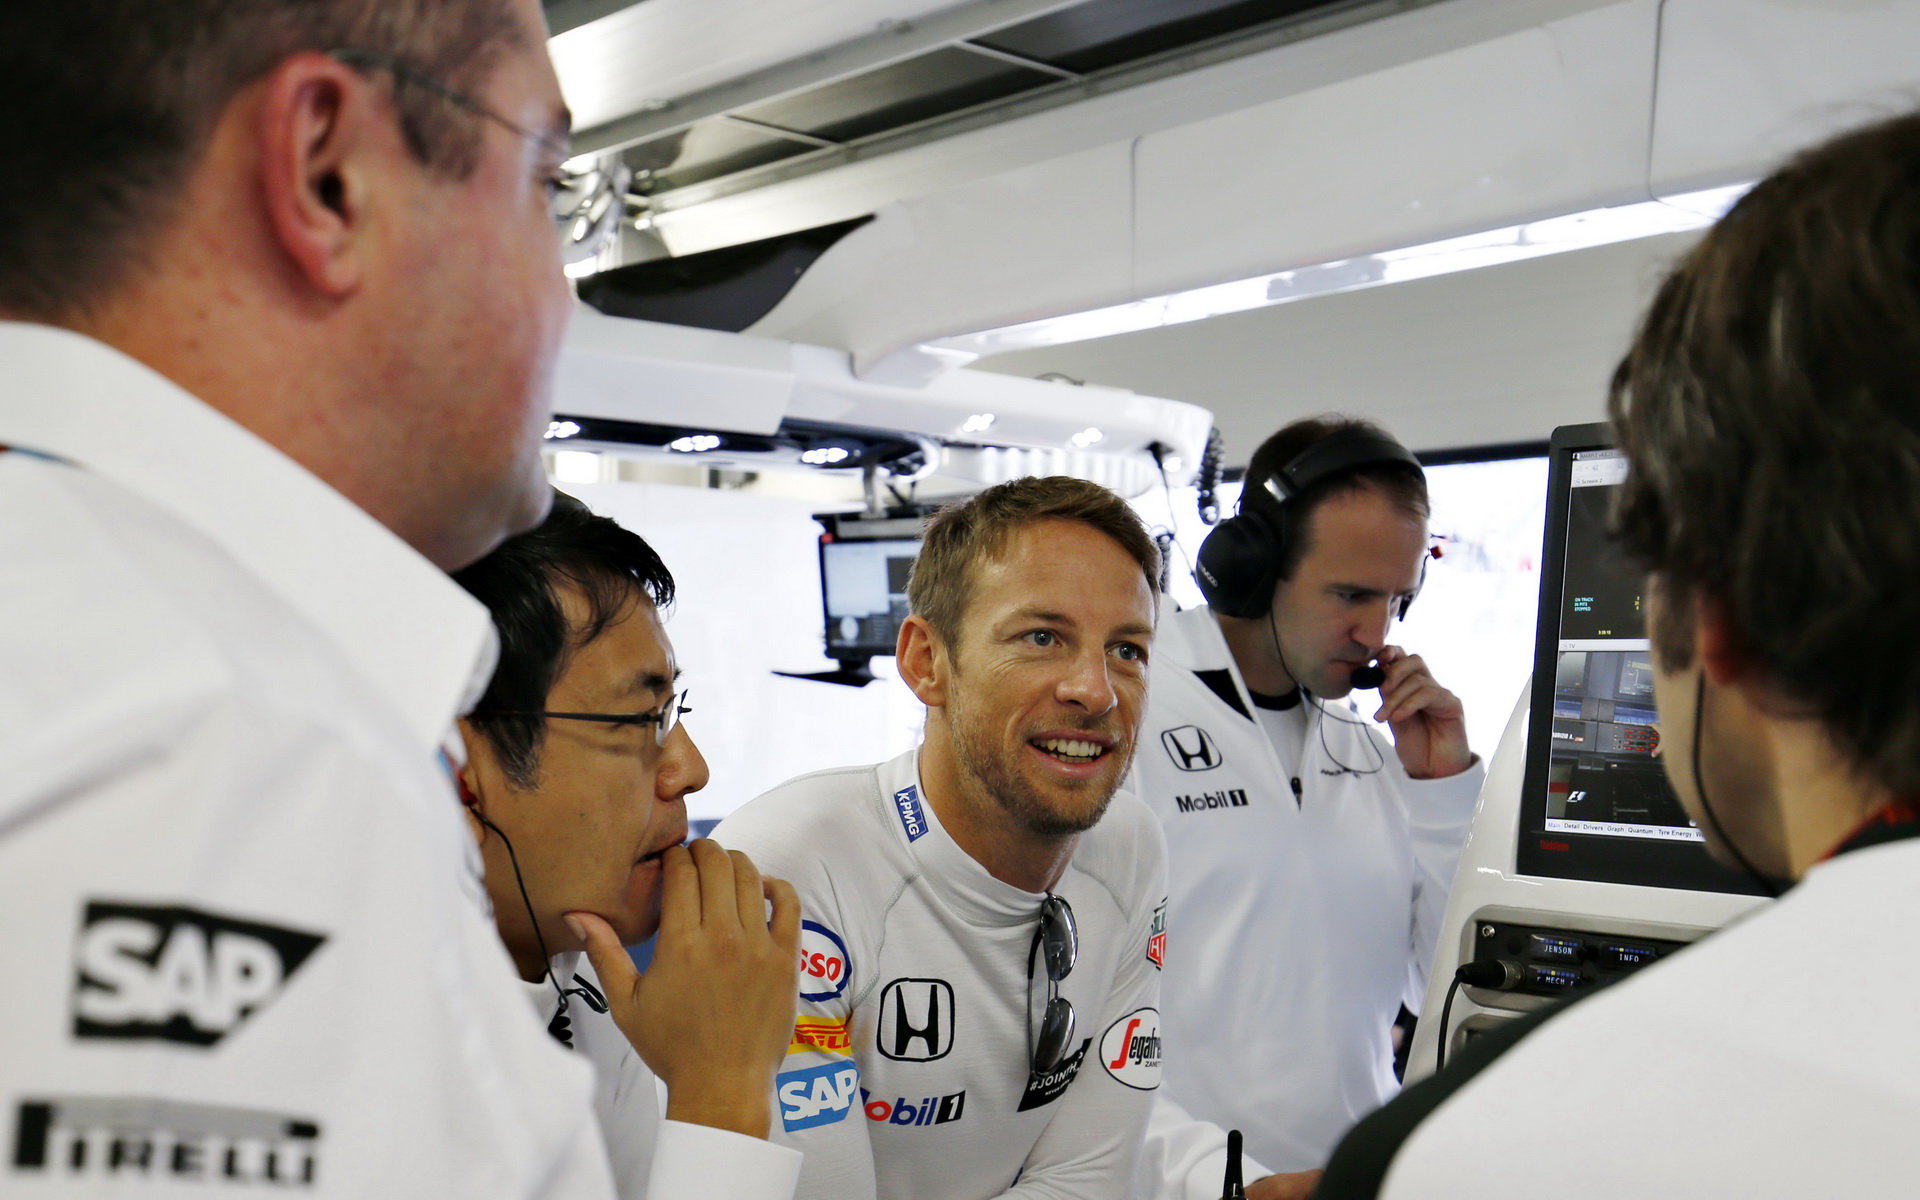 Jenson Button oceňuje úsilí týmu a věří ve velký pokrok